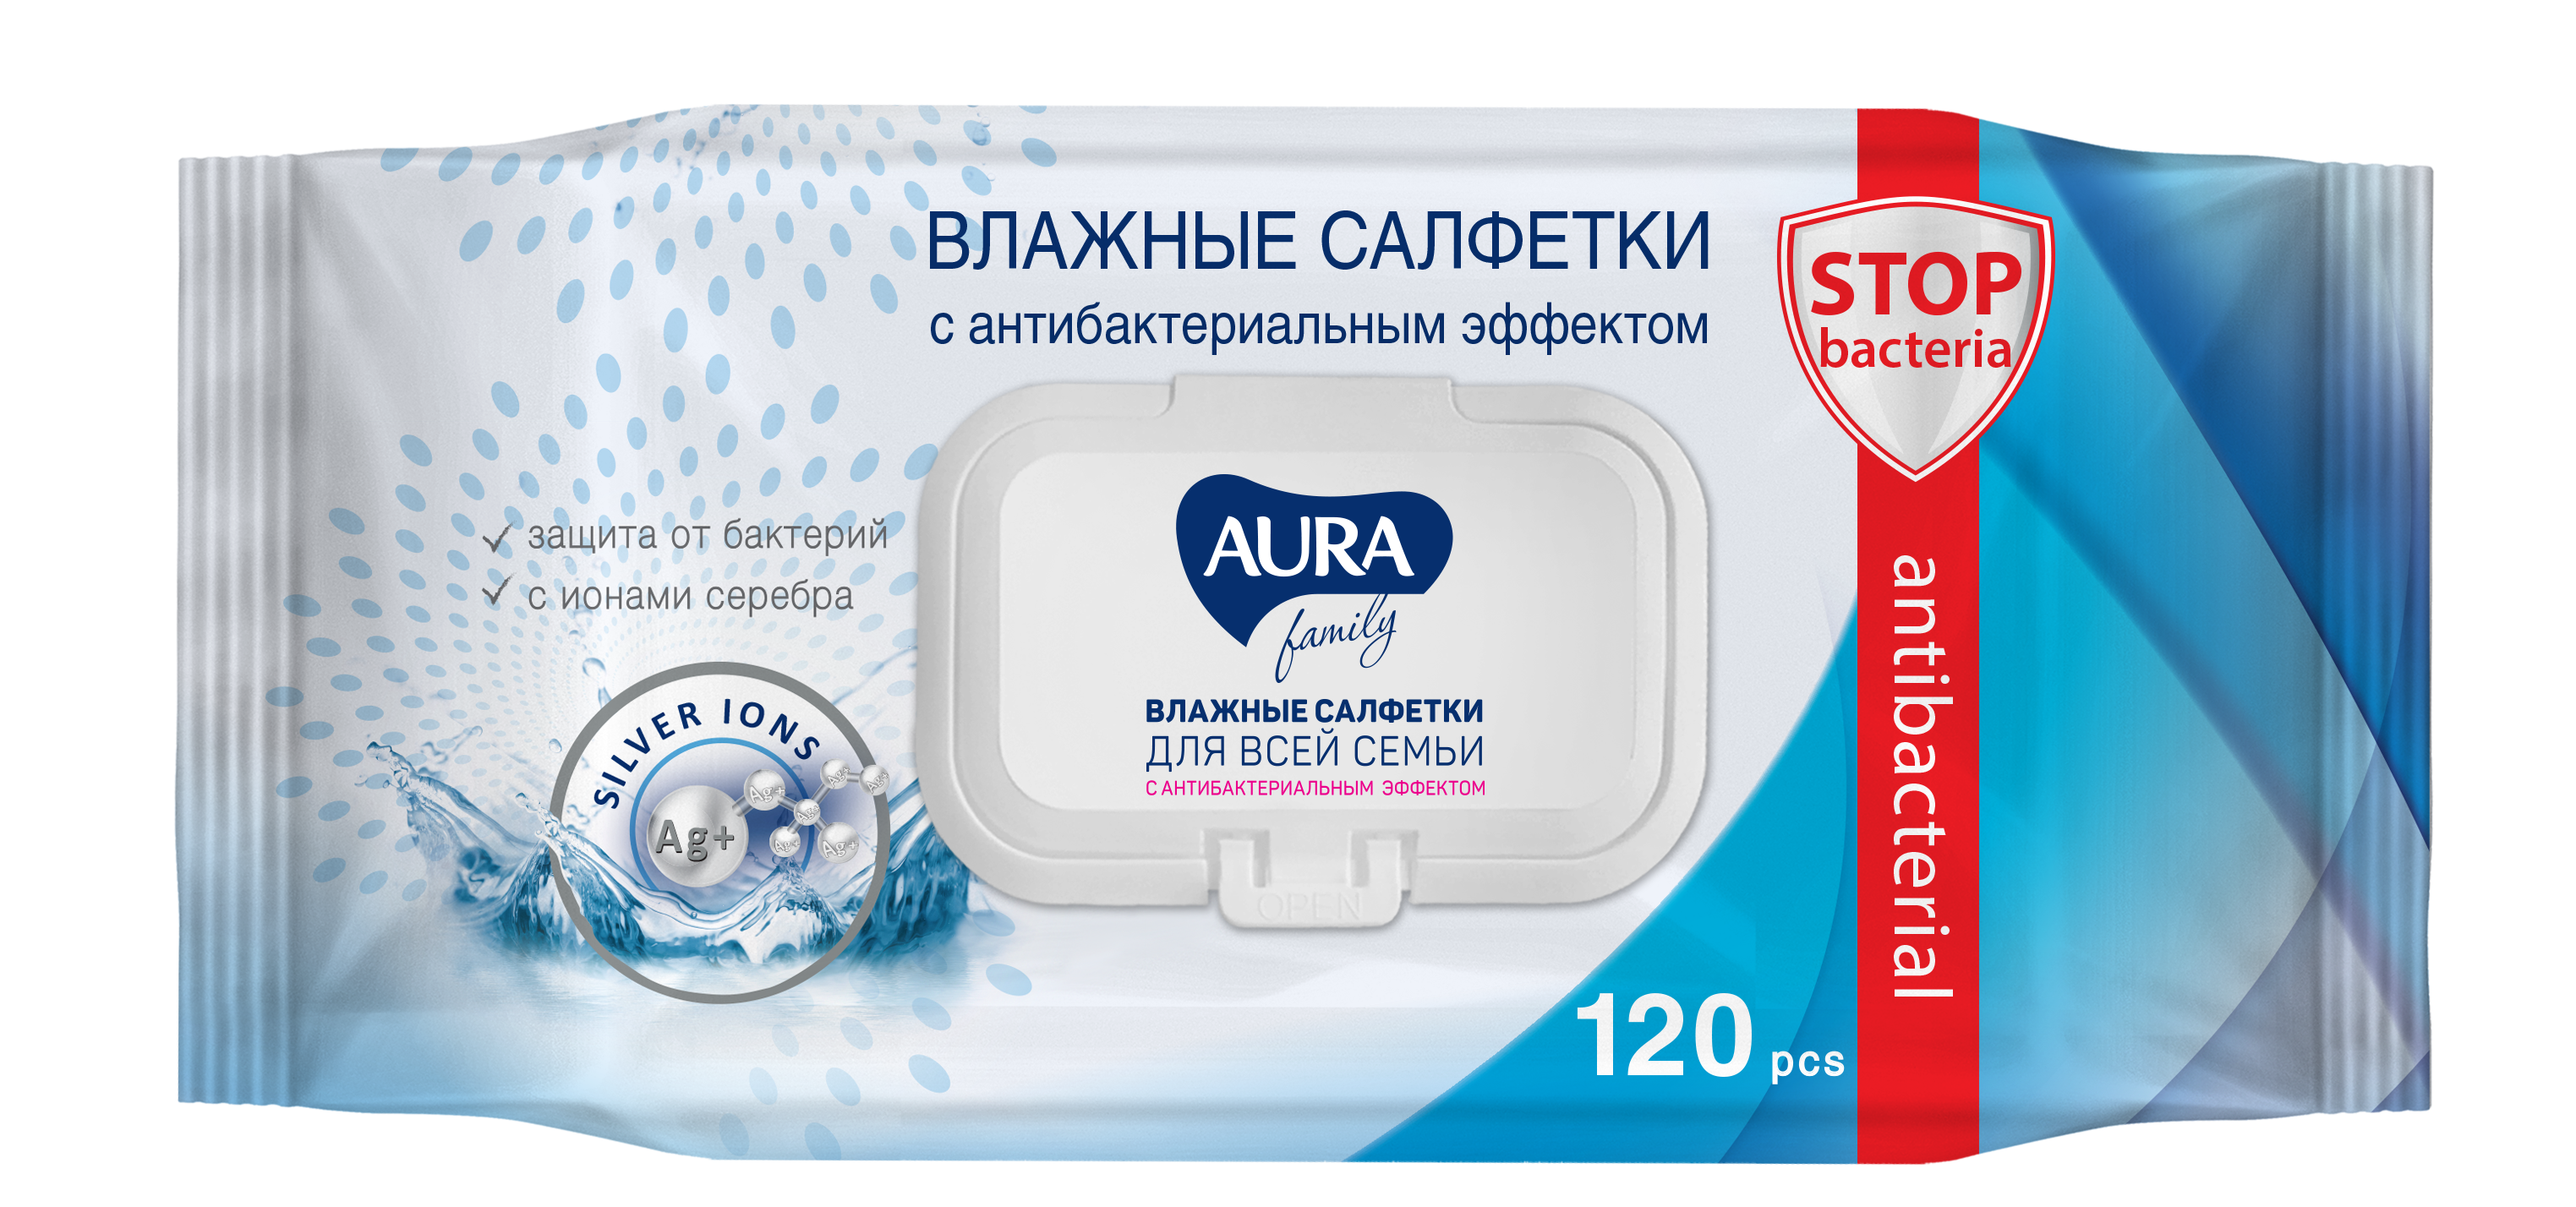 Влажные салфетки AURA для всей семьи с антибактериальным эффектом 120х12шт - фото 3